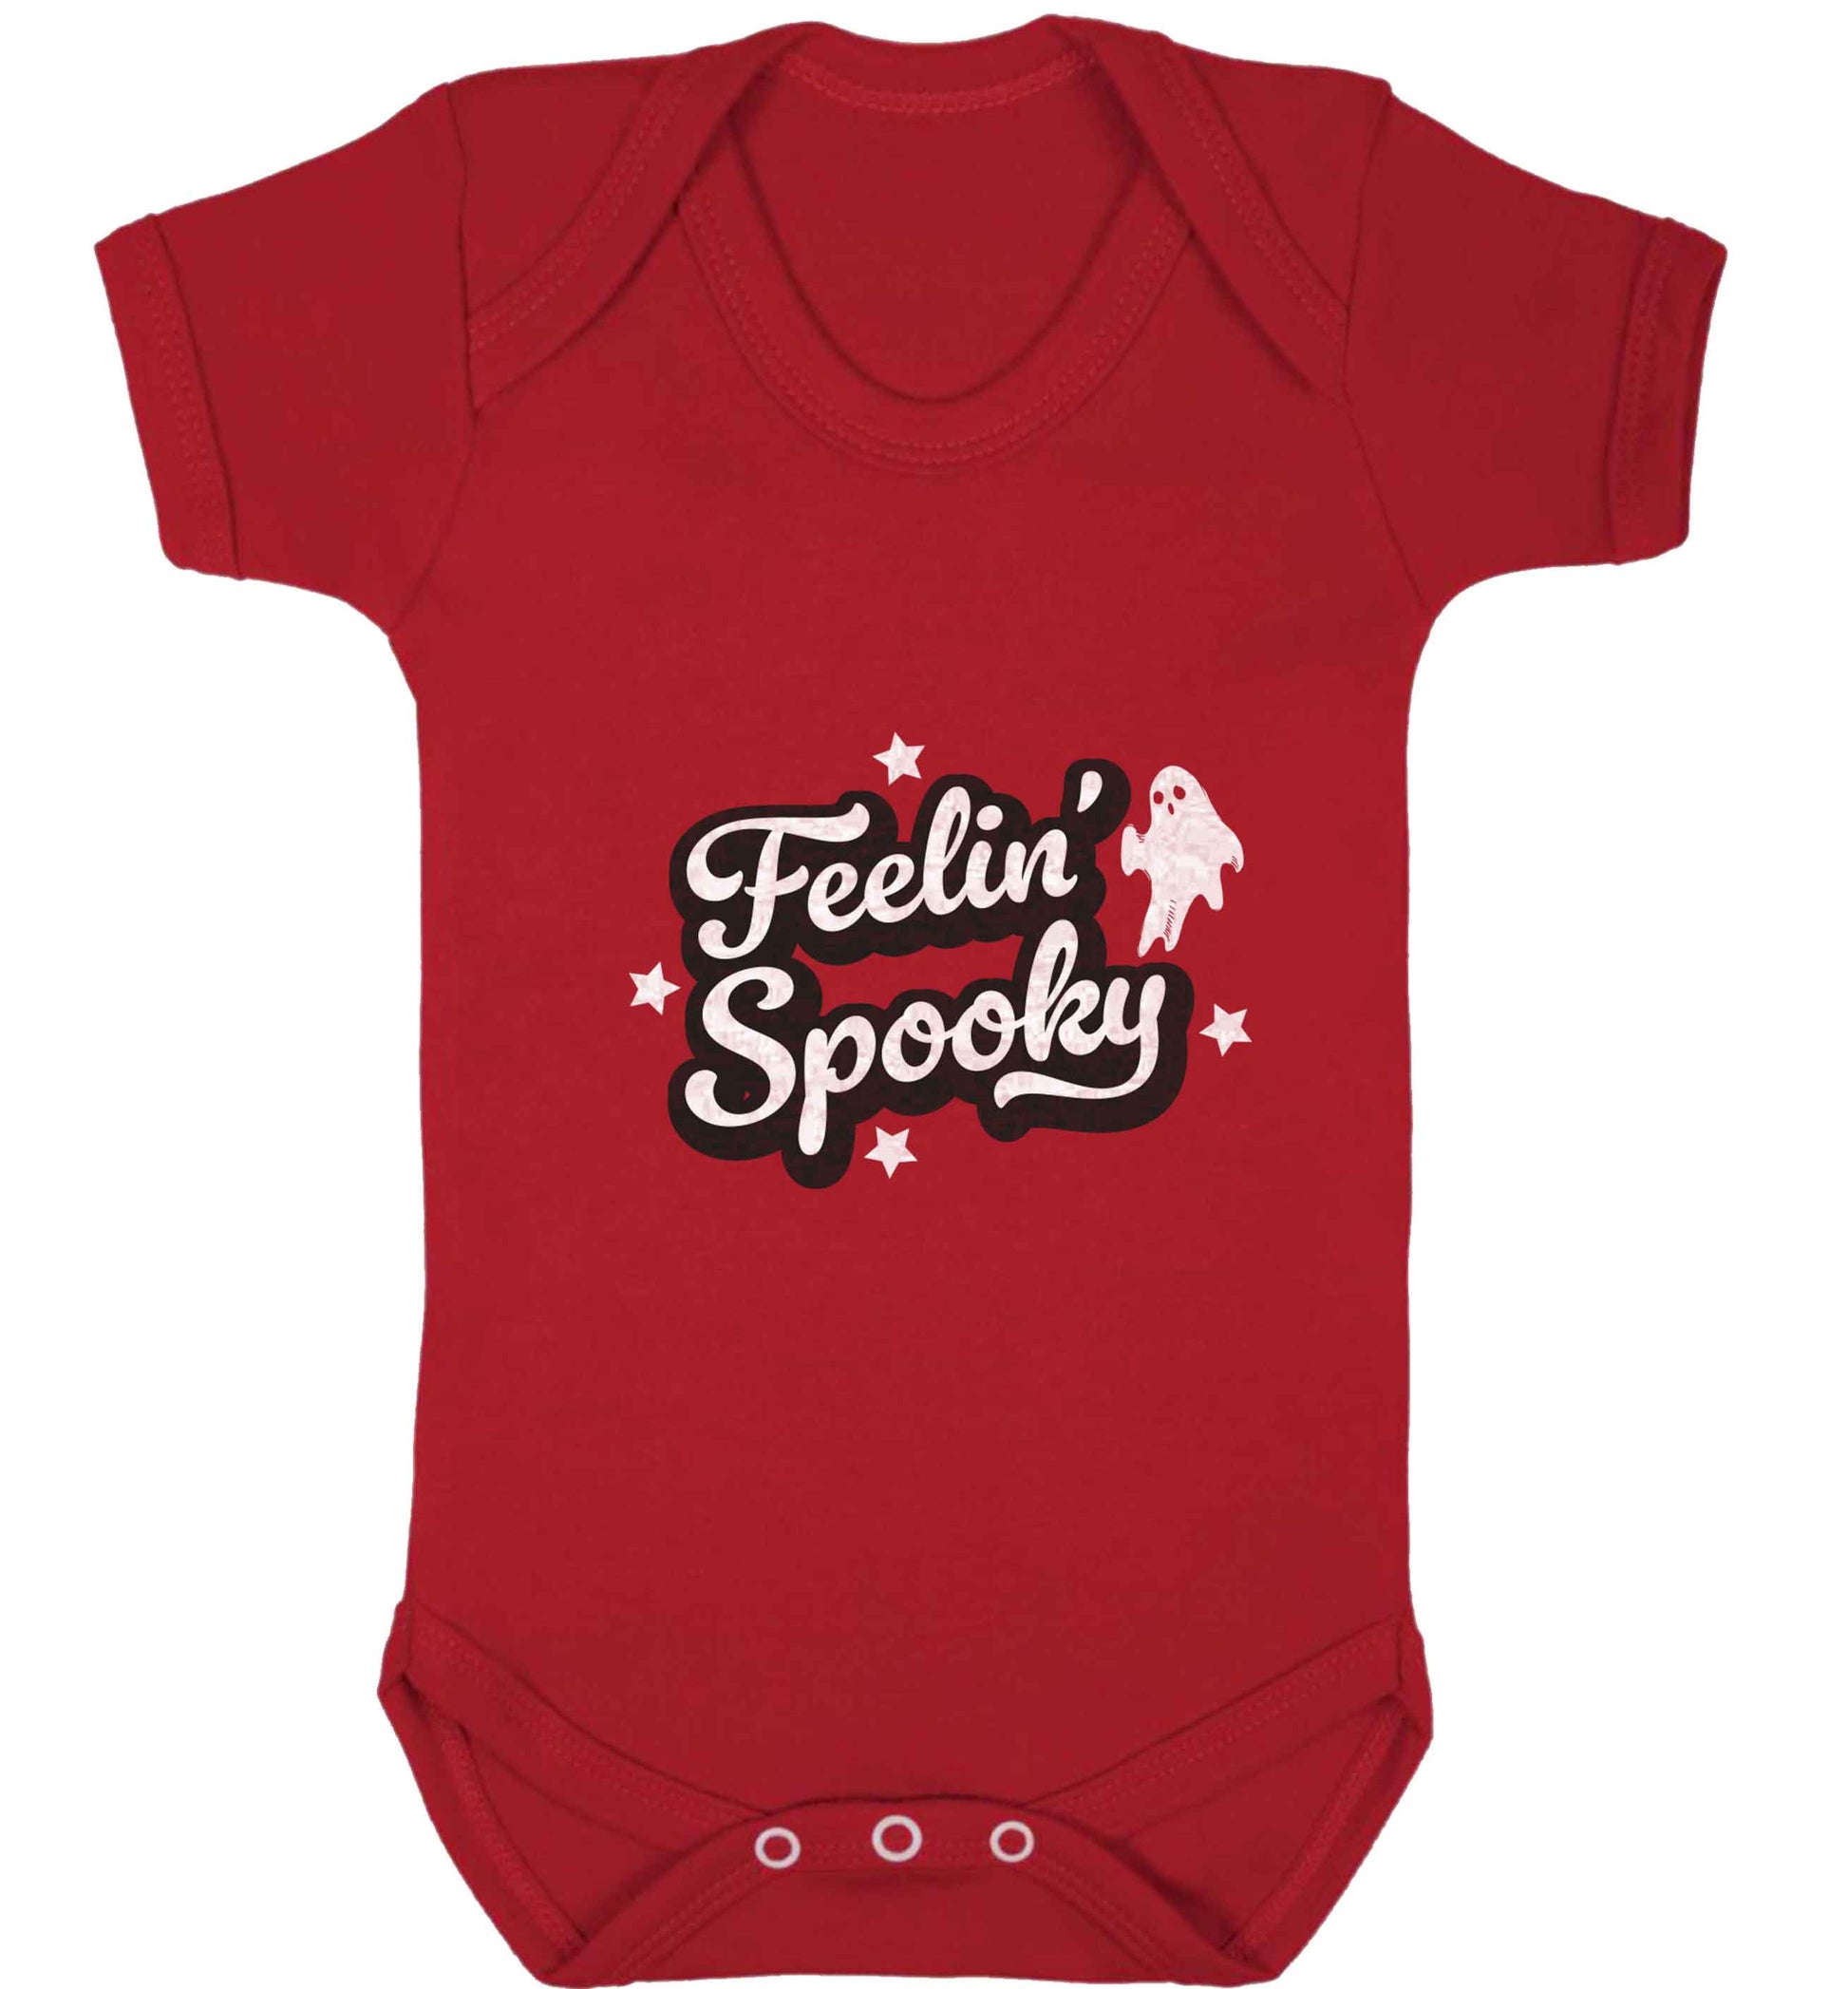 Feelin' Spooky Kit baby vest red 18-24 months